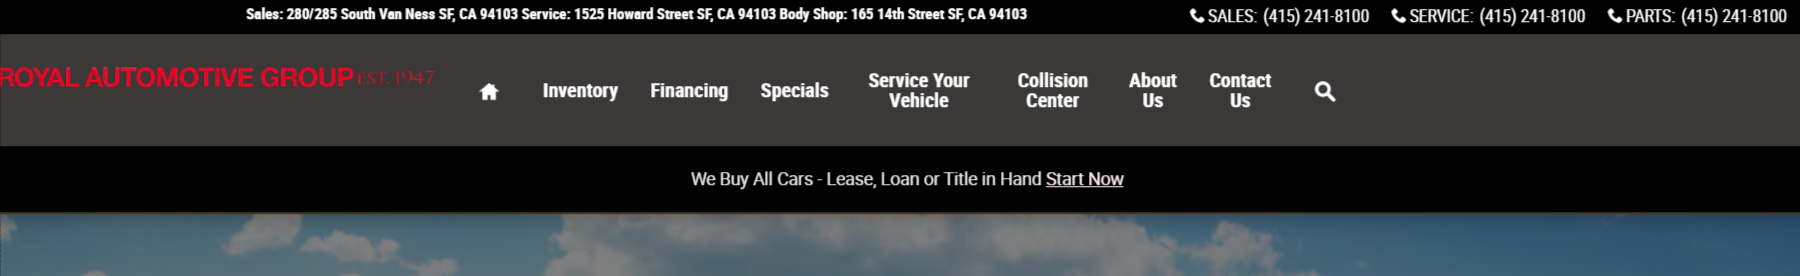 Best Mercedez Dealership in San Francisco